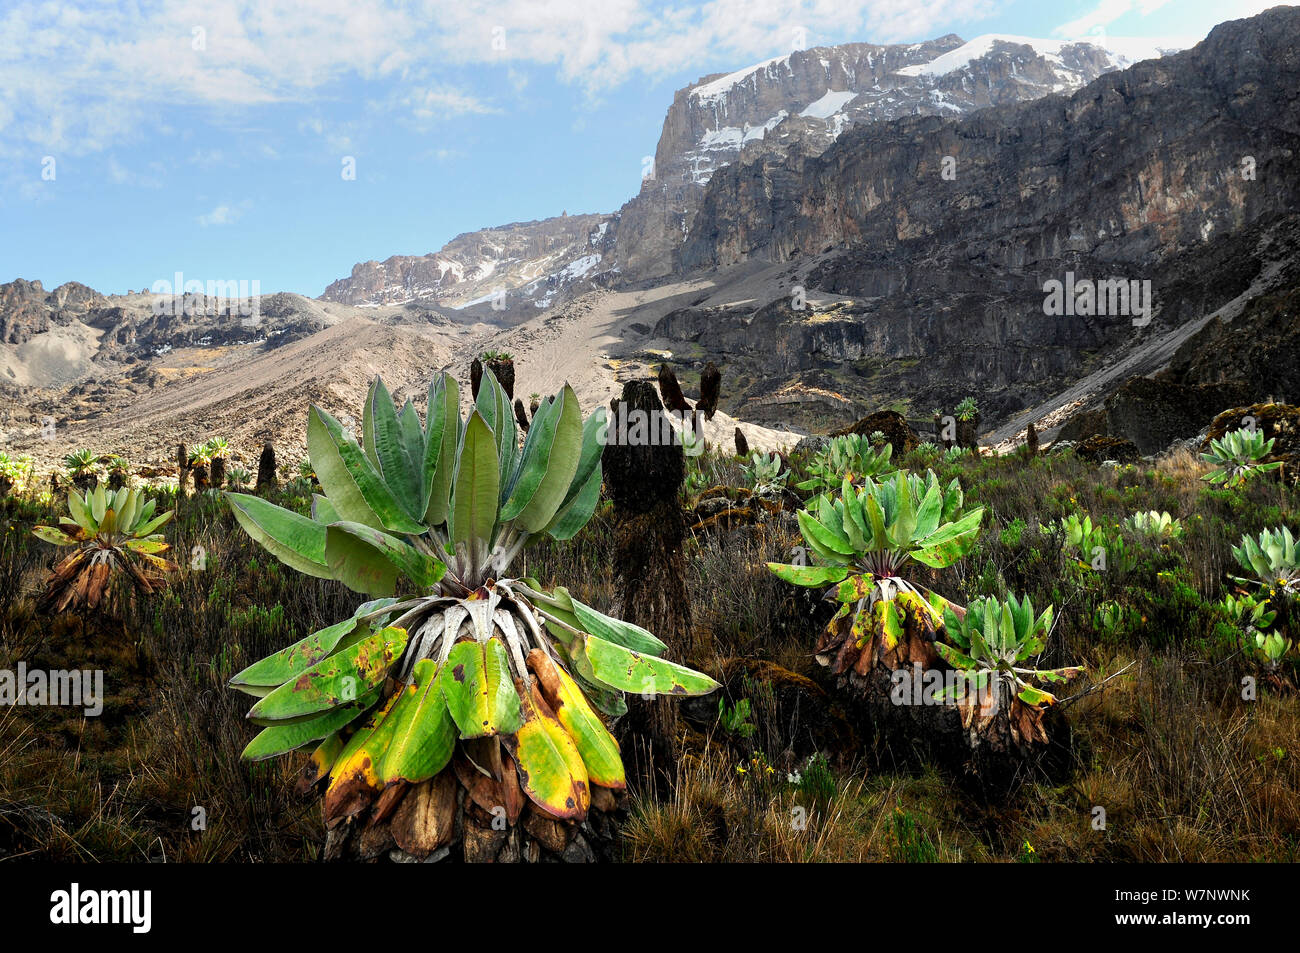 Giant groundsel (Dendrosenecio sp) at 4000m altitude on slopes of Mount Kilimanjaro, Tanzania Stock Photo